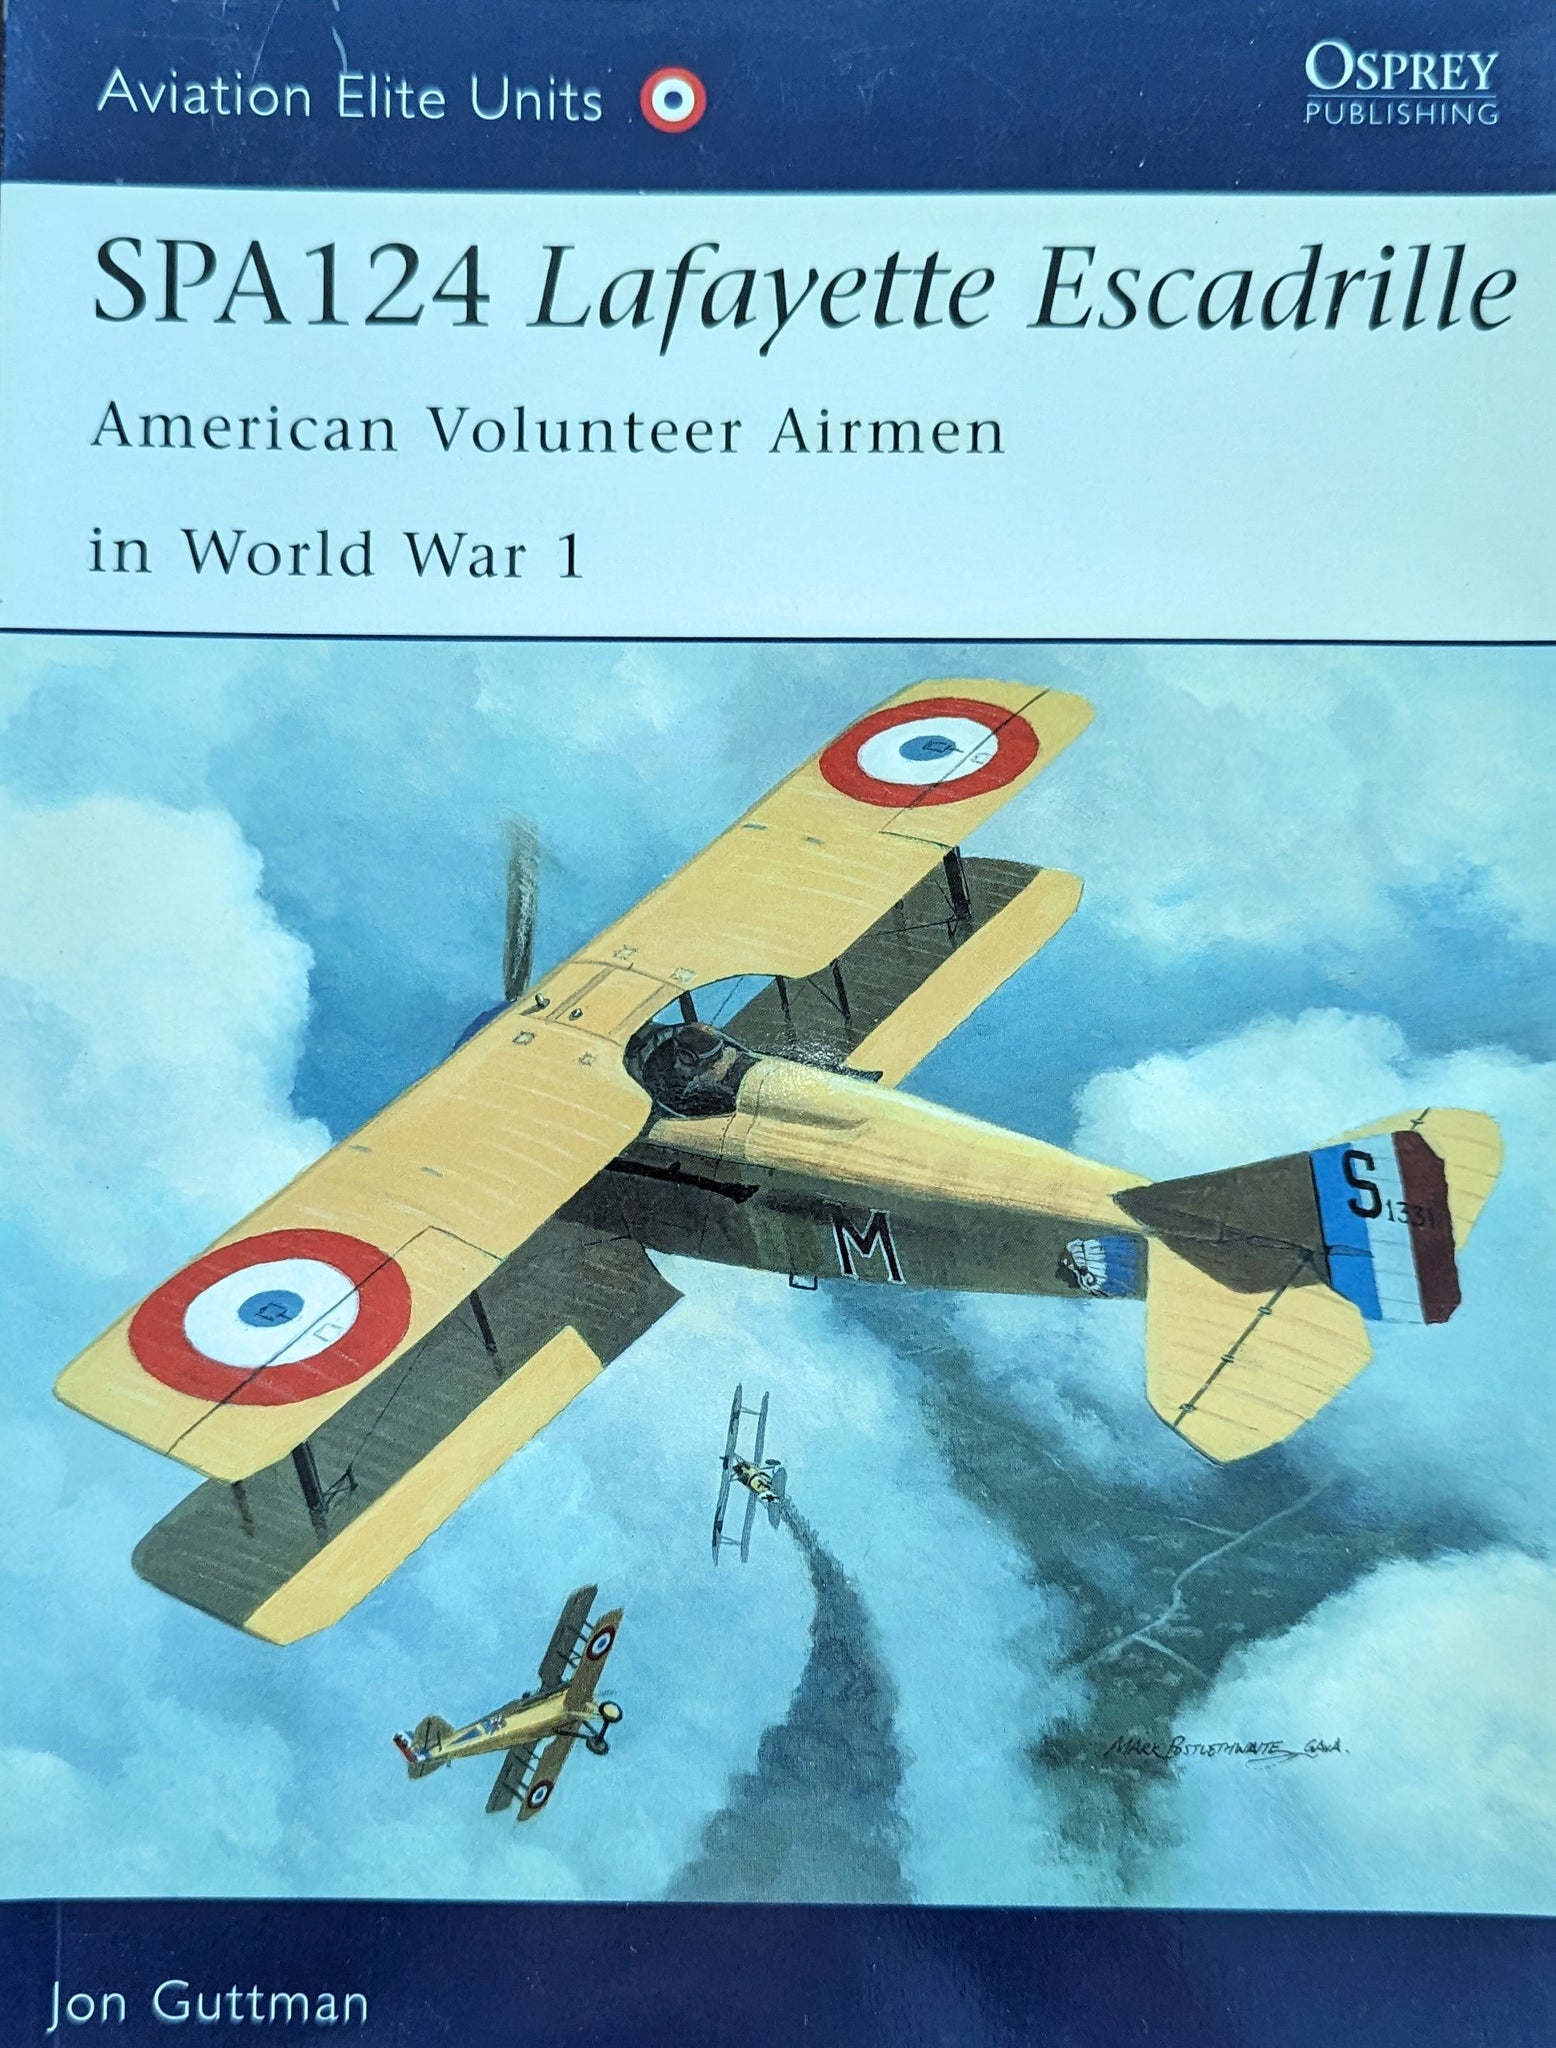 SPA 124 LAFAYETTE ESCADRILLE American Volunteer Airmen in World War 1 (Osprey Aviation Elite No 17)